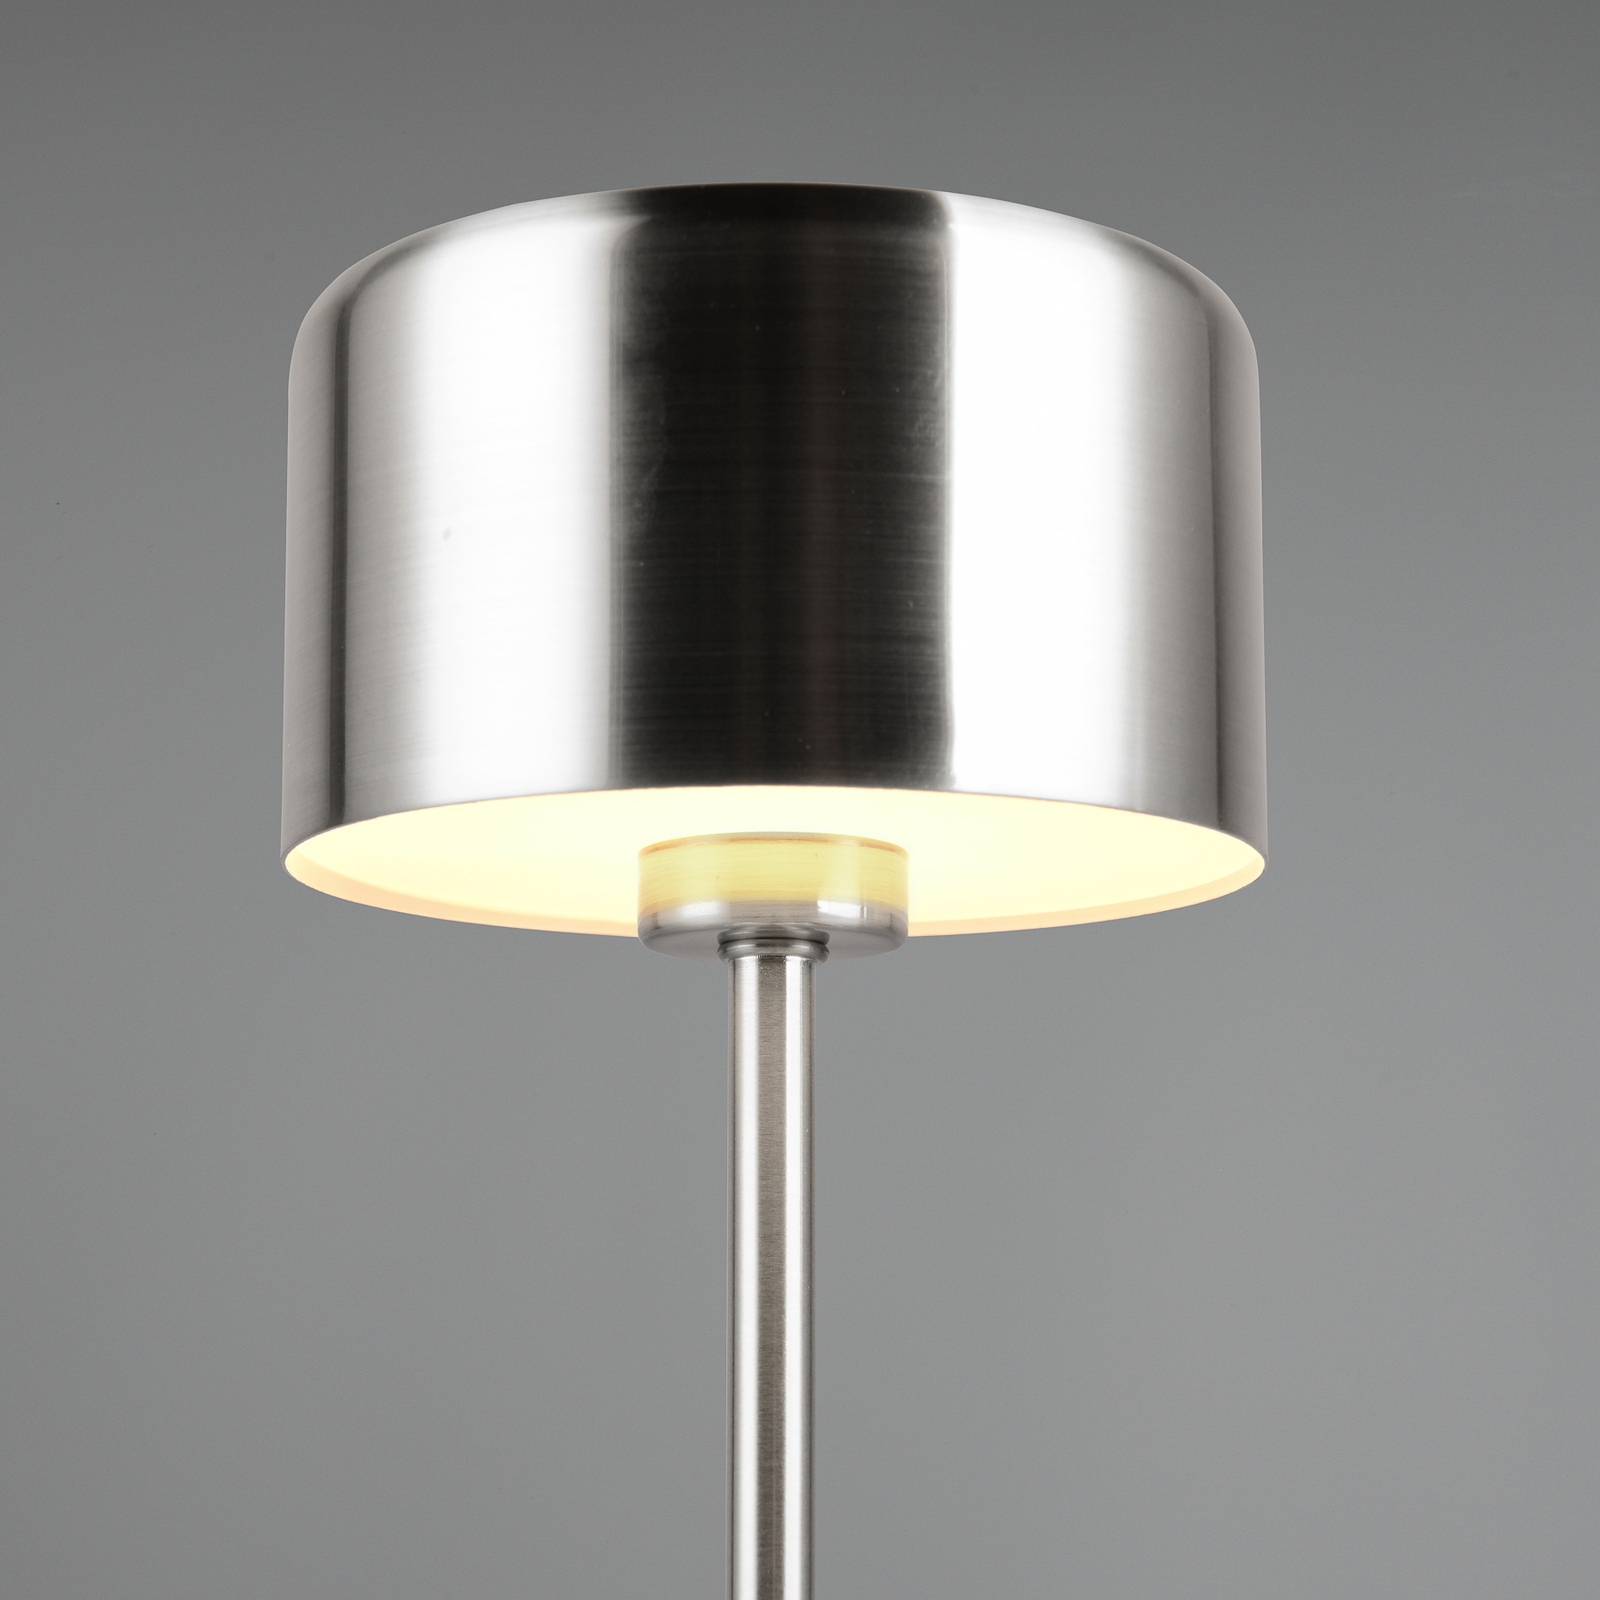 Jeff LED tafellamp, nikkelkleurig, hoogte 30 cm, metaal